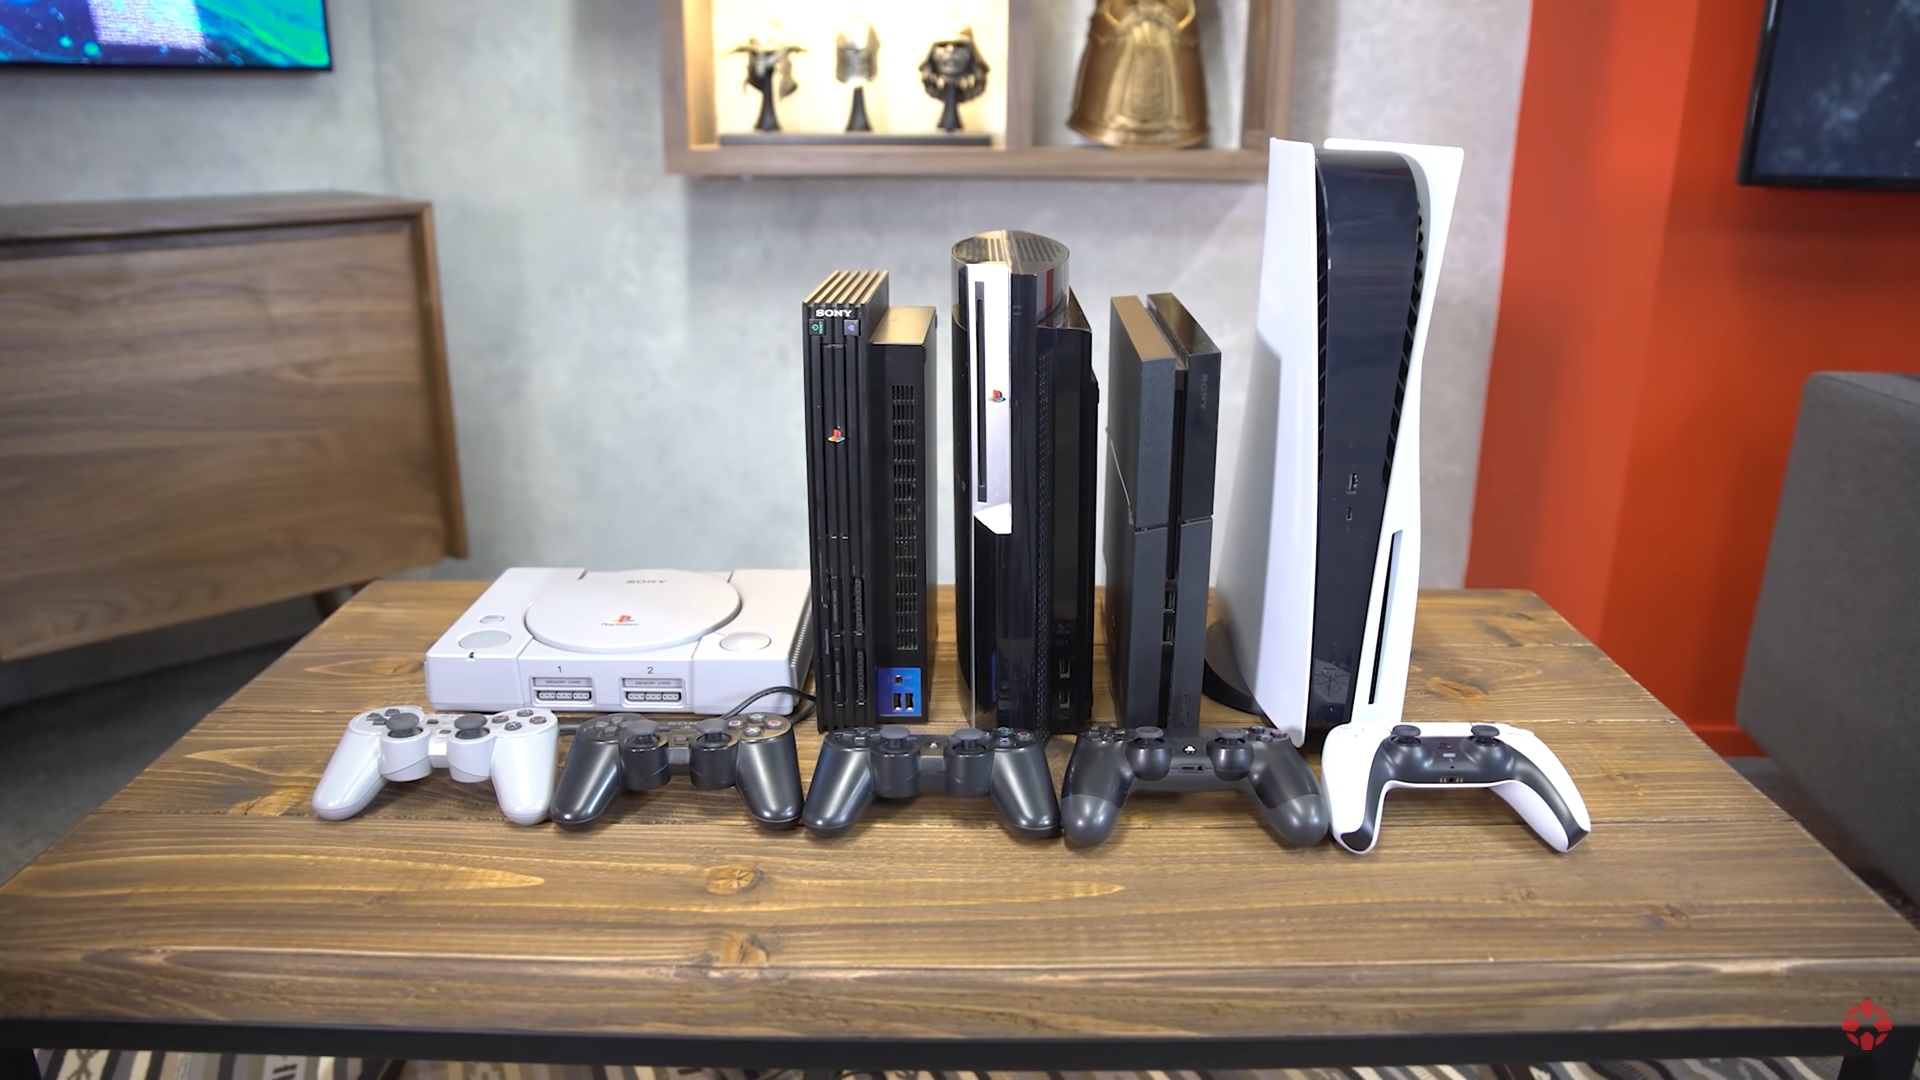 Sony vai aumentar produção de PS5 e ampliar portfólio de jogos - Época  Negócios